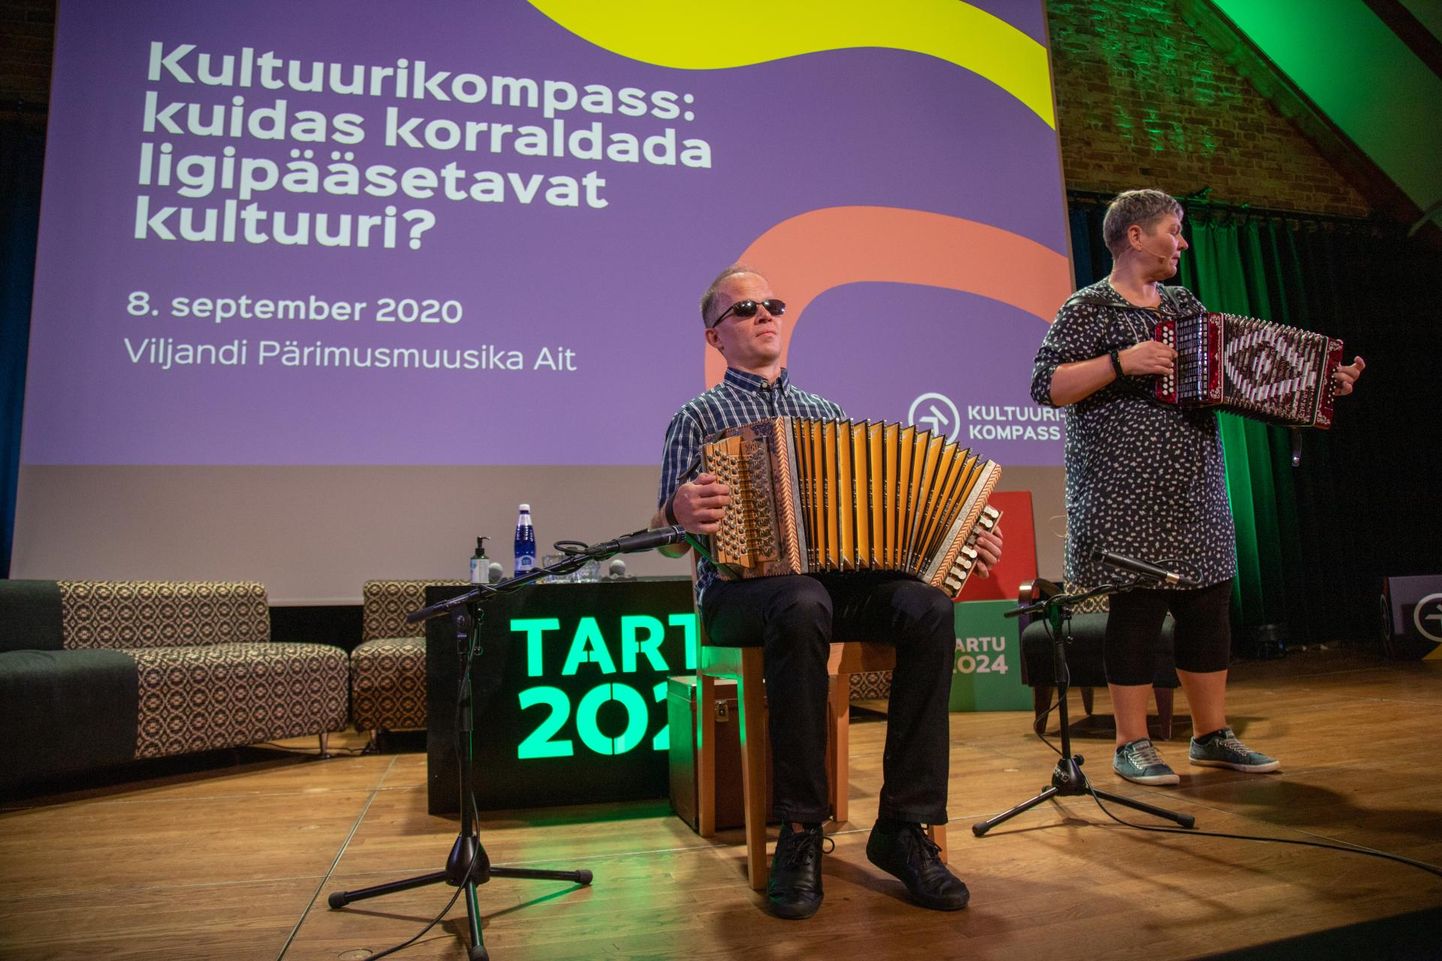 Tartu 2024 esimese ürituse Viljandis, pärimusmuusika aidas korraldatud foorumi avasid 8. septembril pillimänguga Harry Kare ja Piret Aus.